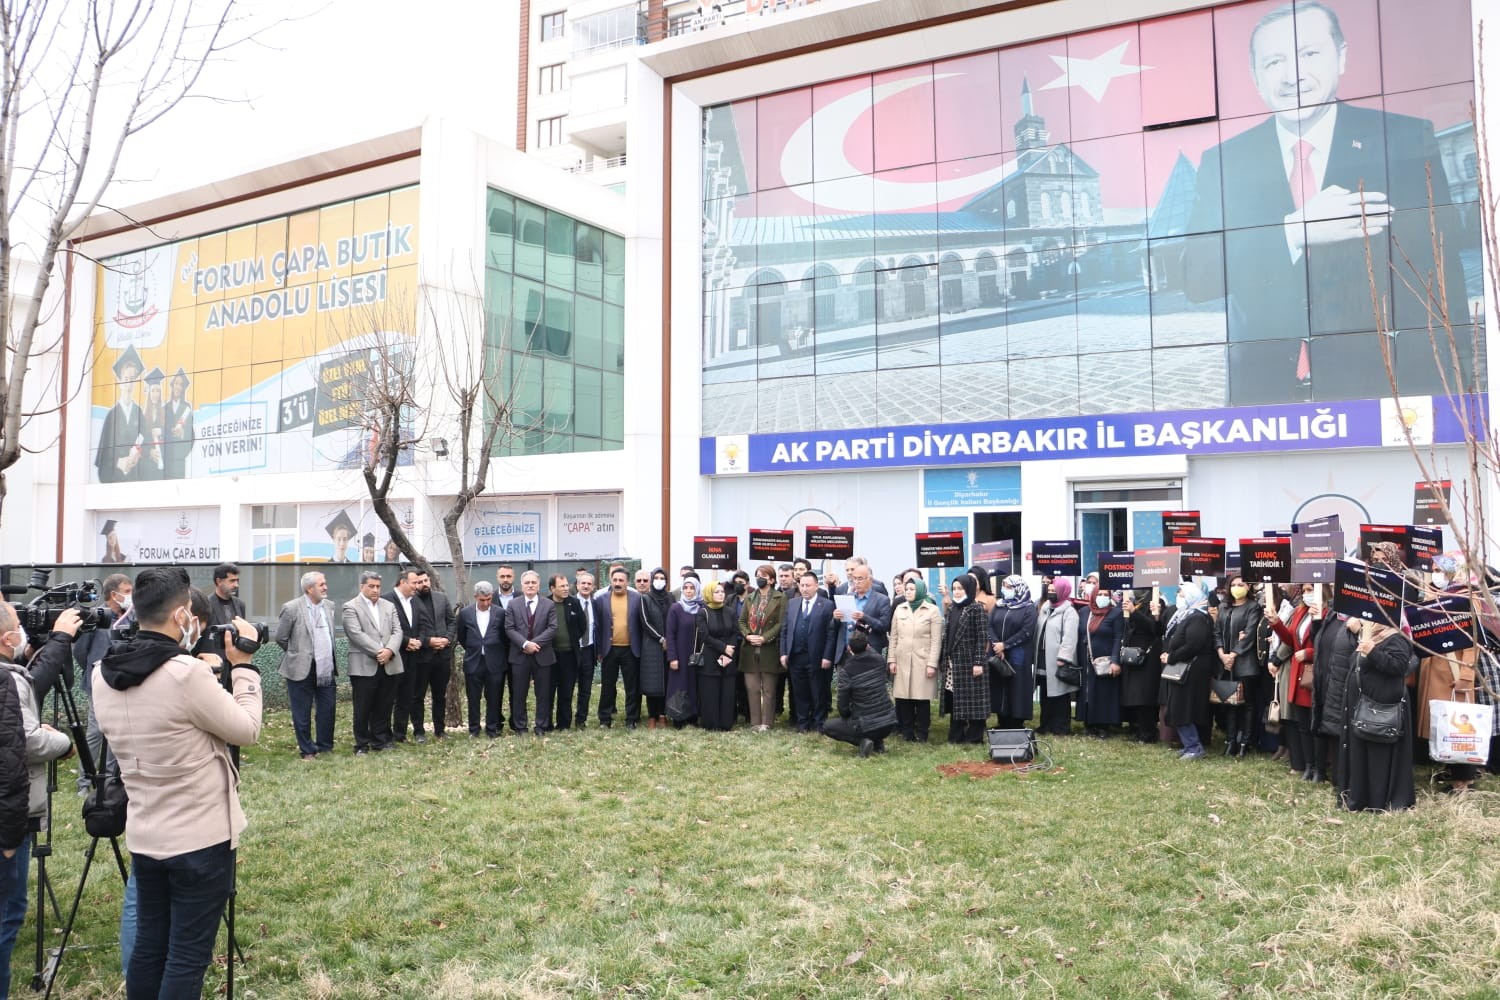 AK Parti Diyarbakır İl Başkanlığından 28 Şubat açıklaması #diyarbakir